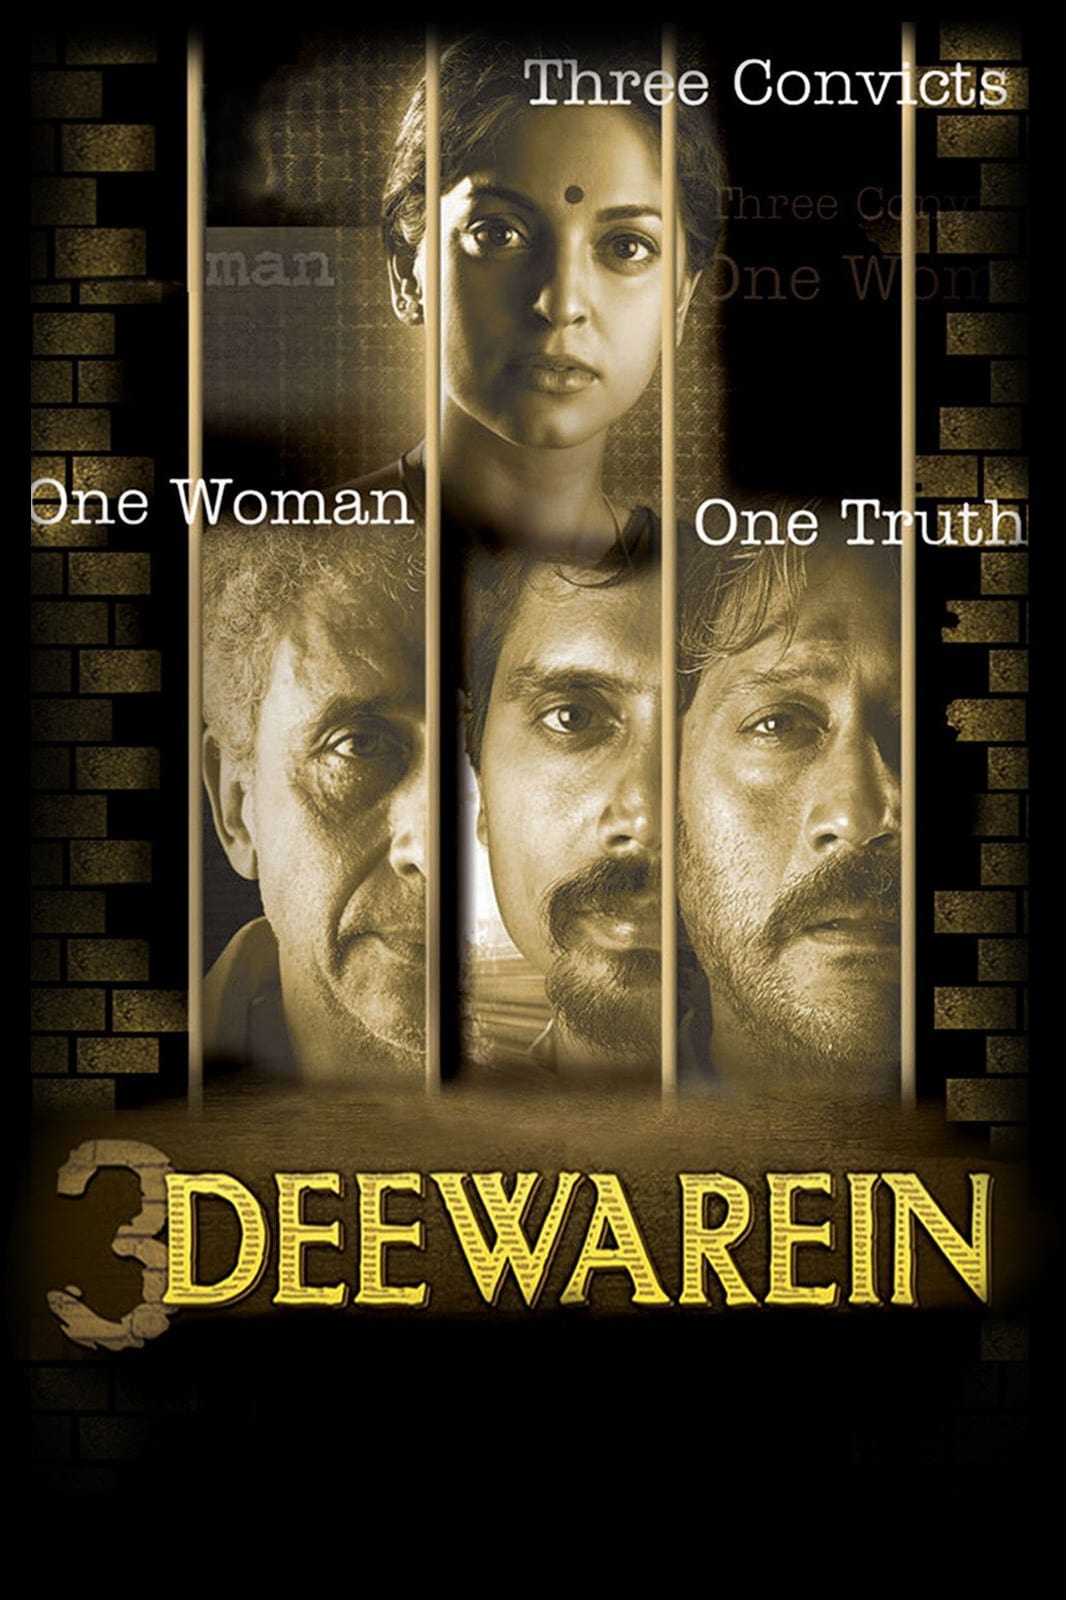 3 Deewarein (2003)